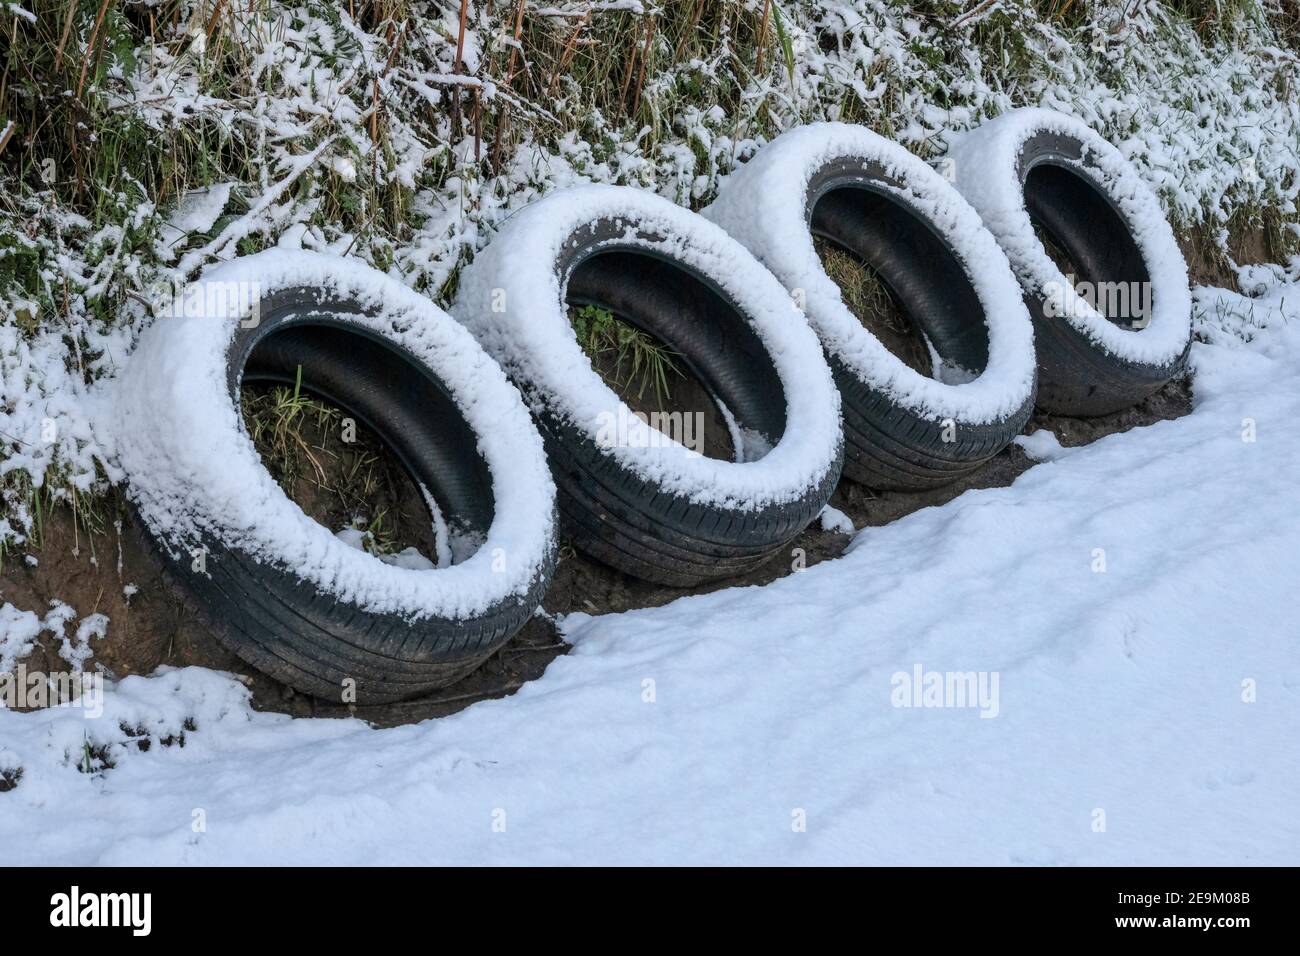 Quatre pneus déversés et abandonnés à un point de passage sur une étroite voie de campagne enneigée. Carmarthenshire. Pays de Galles. ROYAUME-UNI Banque D'Images